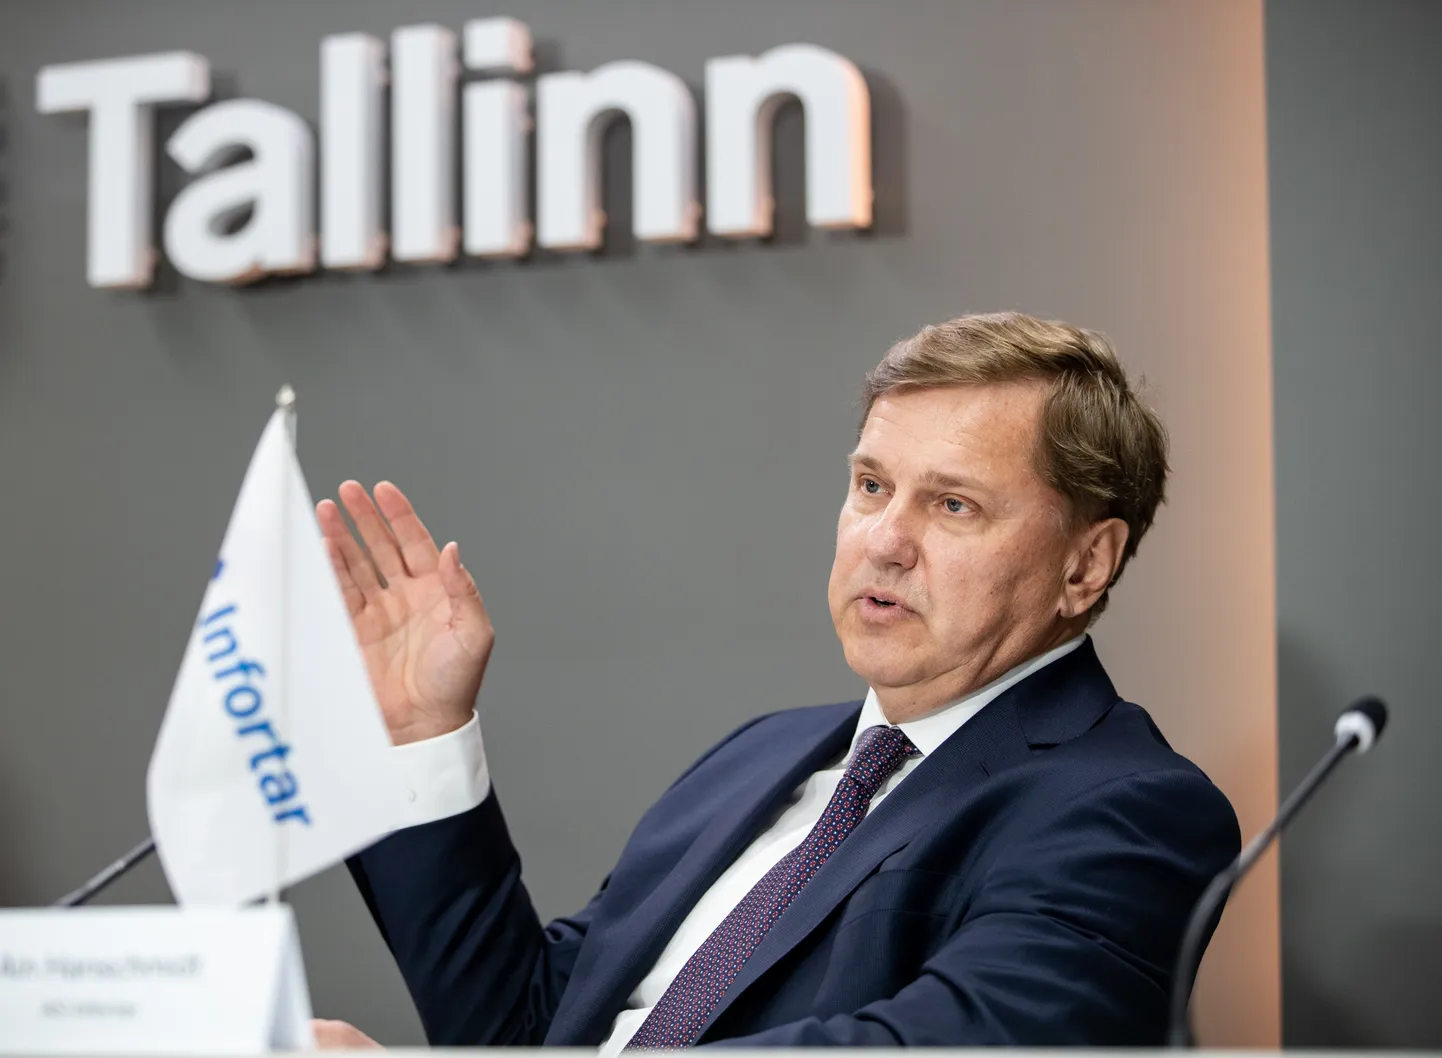 26.02.2020. Tallinn. 
Tallinna linn, AS Tallink Grupp ja AS Infortar pressikonverents. Ain Hanschmidt.